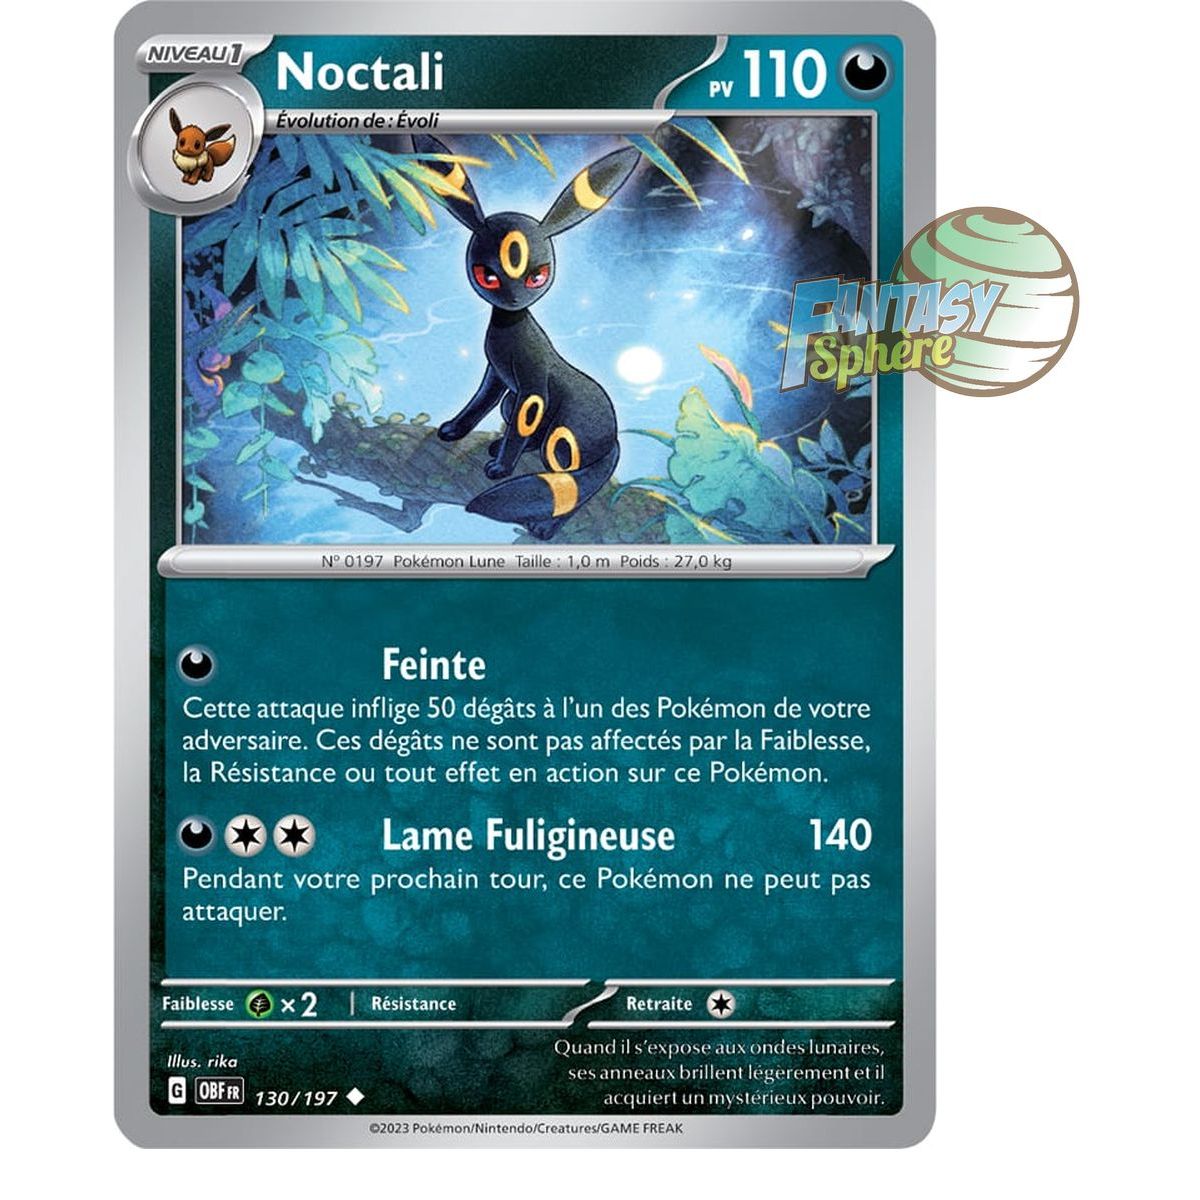 Noctali (Umbreon) Strat - Stratégie et Moveset du Pokémon Noctali